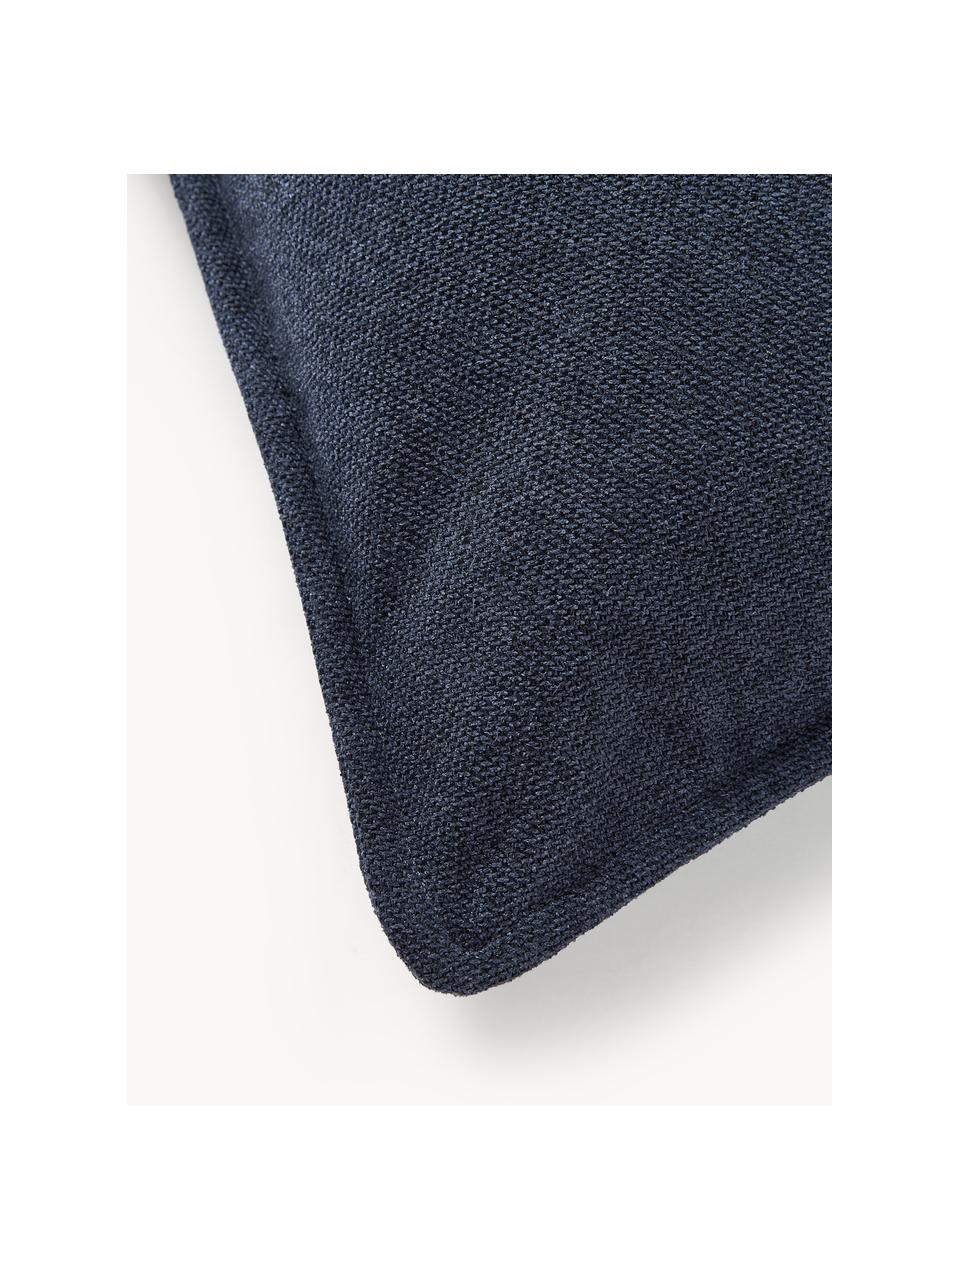 Cojín sofá Lennon, Funda: 100% poliéster, Tejido azul oscuro, An 70 x L 70 cm